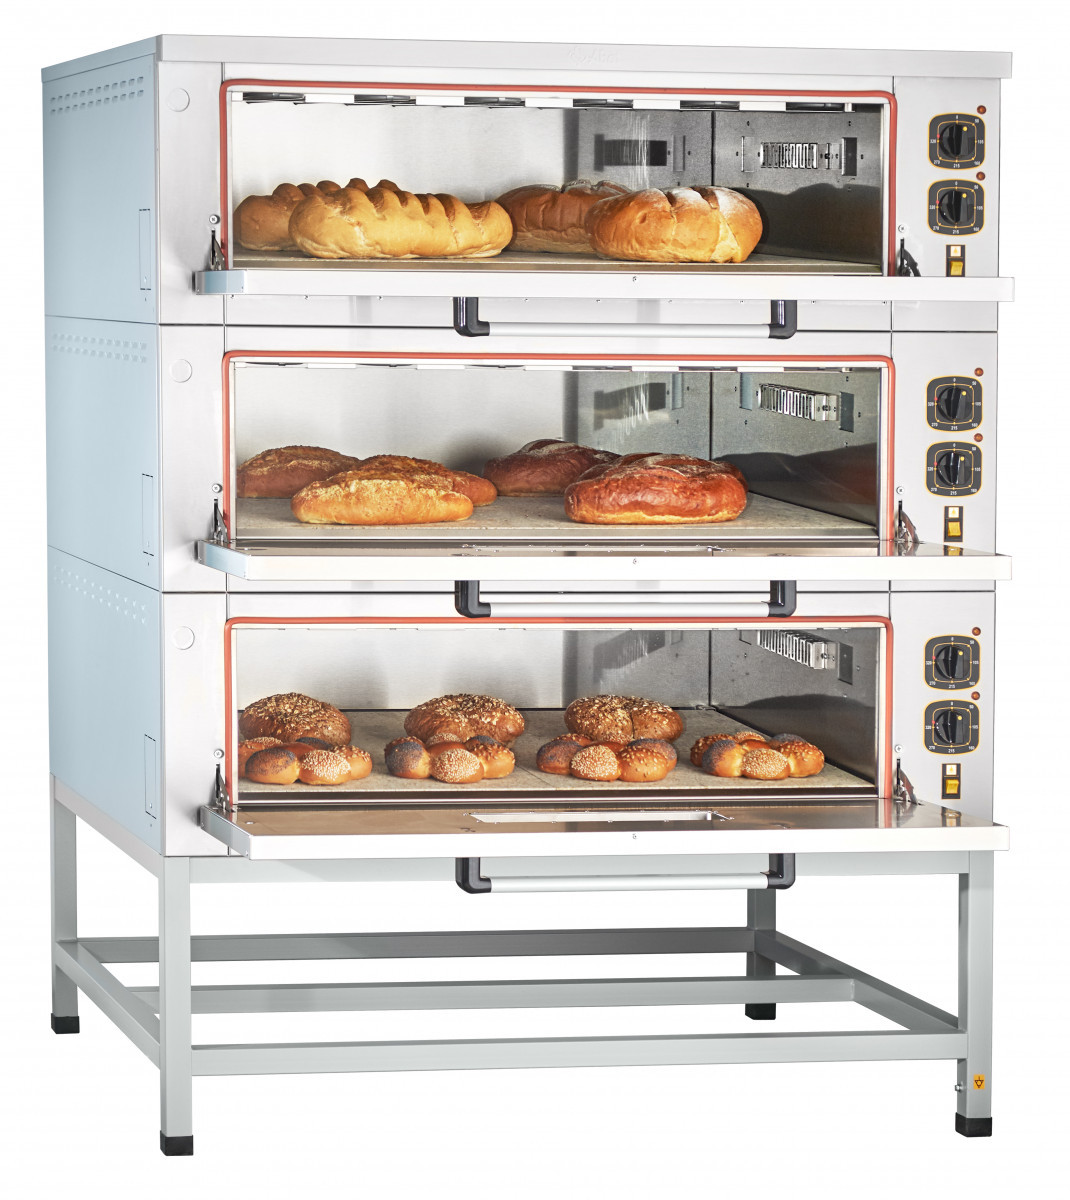 Шкаф пекарский электрический ЭШП-3-01КП  (320 °C, каменный под) нерж. камера